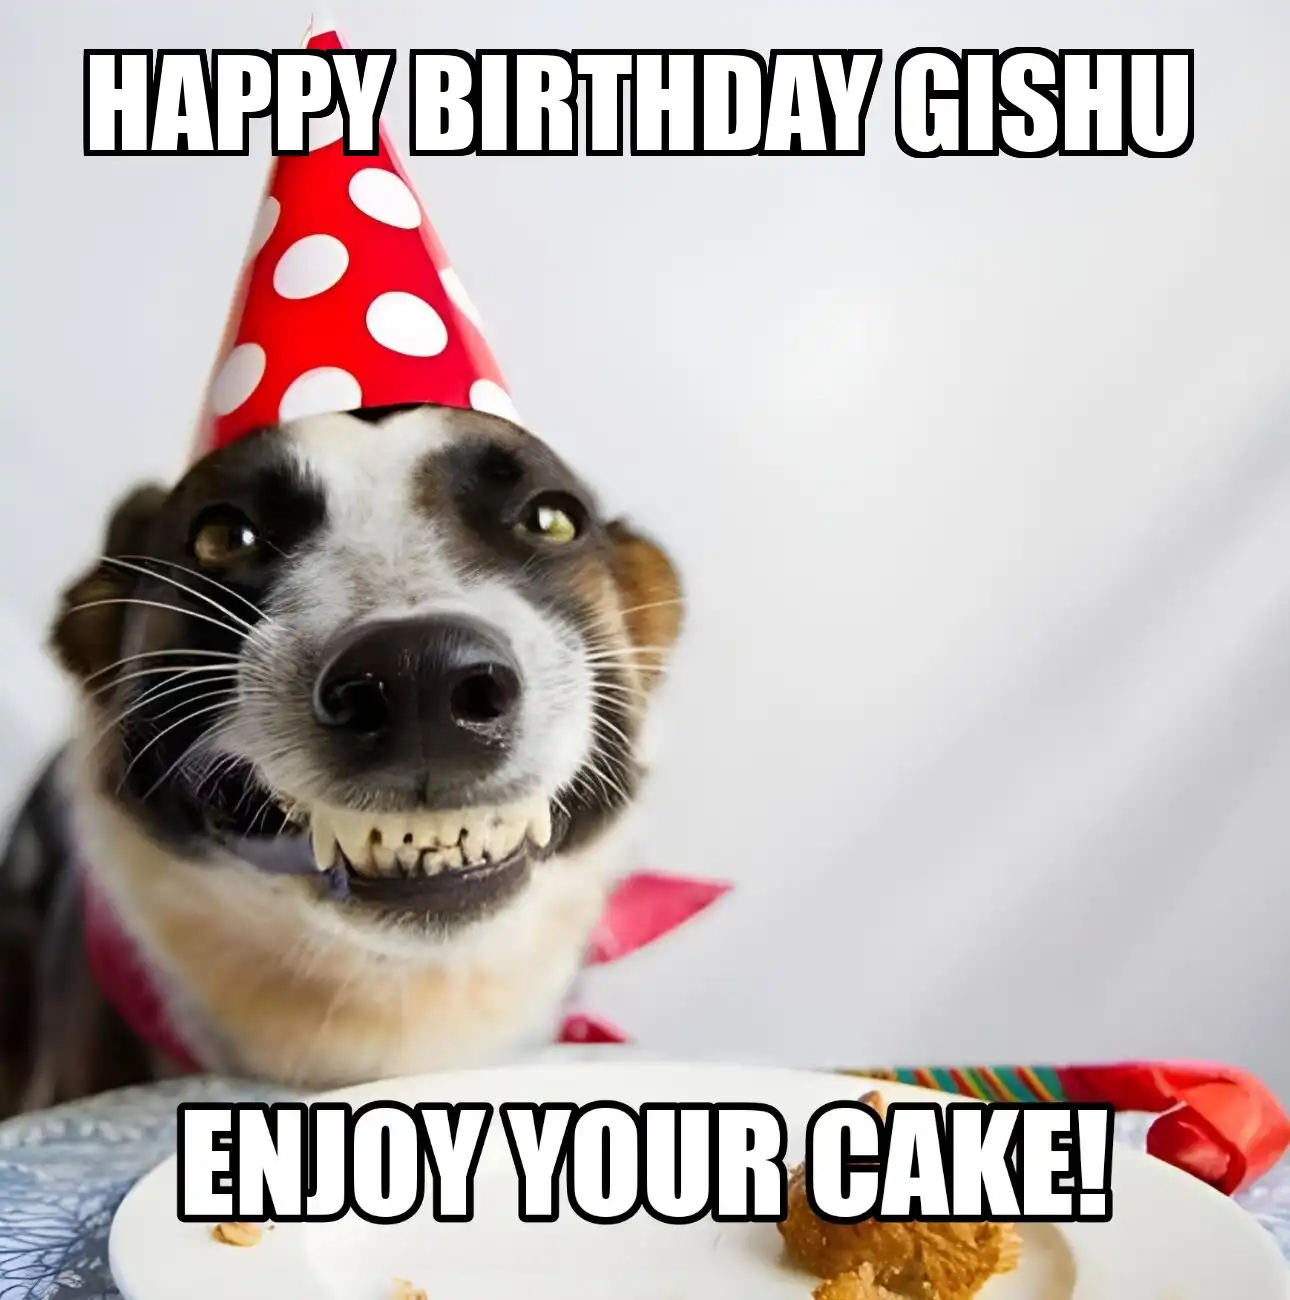 Happy Birthday Gishu Enjoy Your Cake Dog Meme